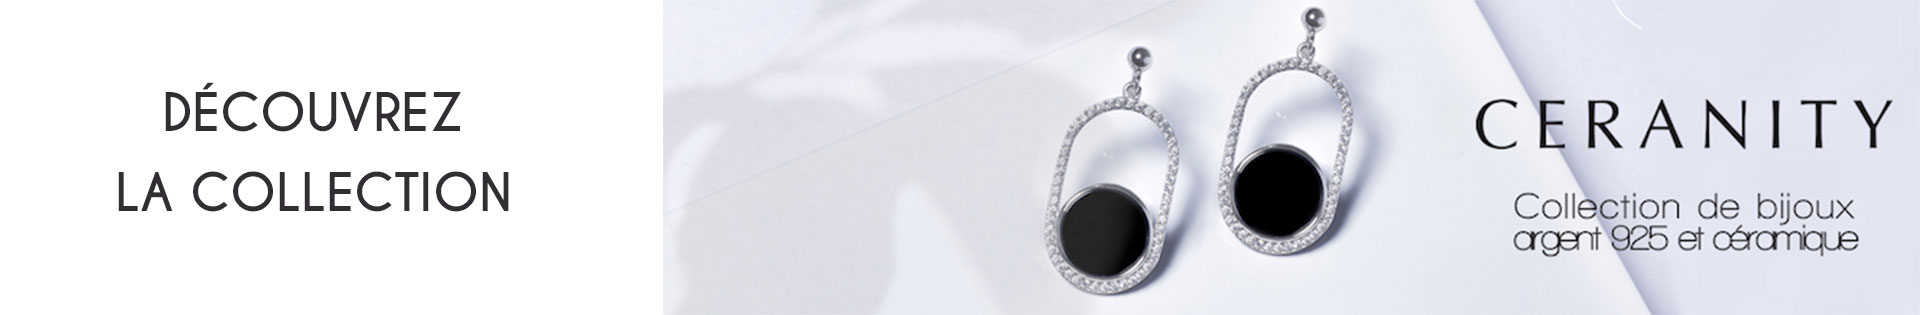 Marques de bijoux - Ceranity Silver - oxyde de zirconium